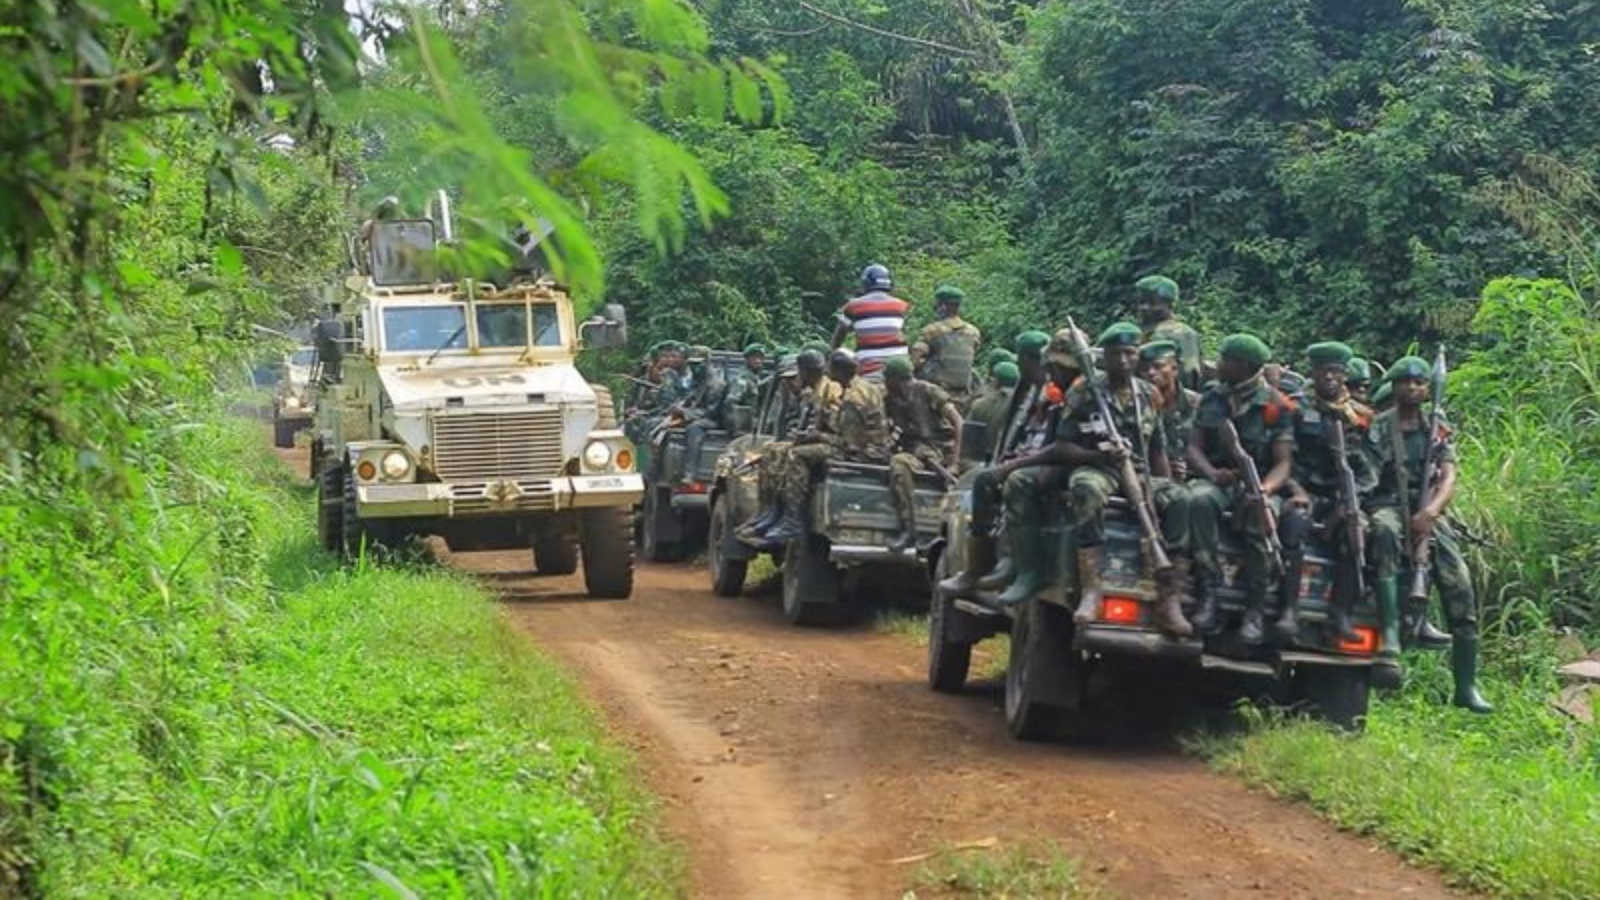 جنود من الجيش الكونغولي وقوات حفظ السلام التابعة للأمم المتحدة يقومون بدورية في منطقة هجوم بالقرب من بلدة أويتشا 